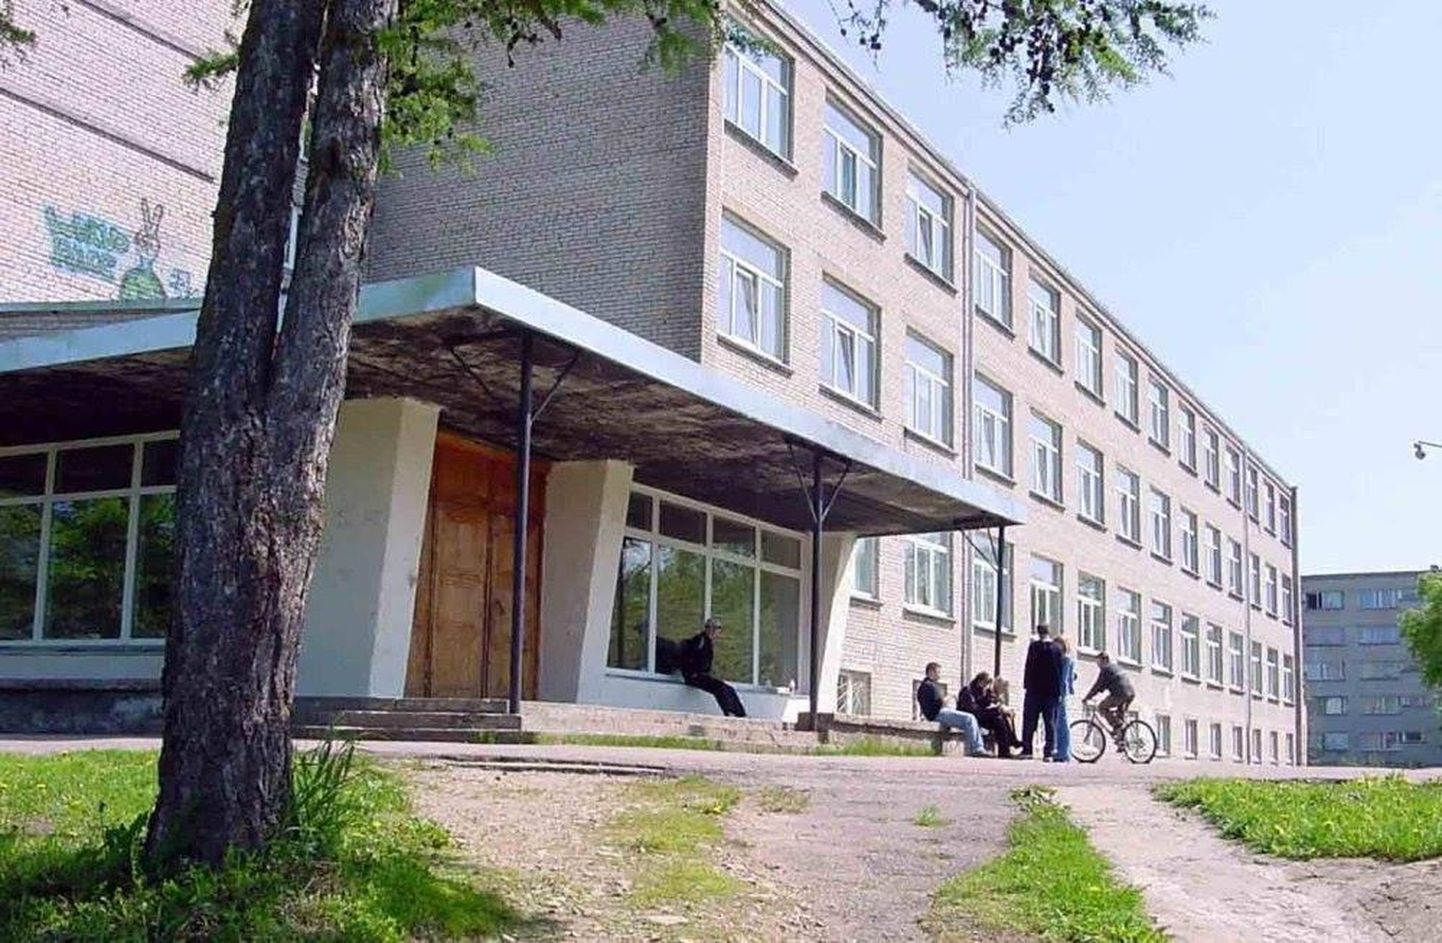 Sillamäe Old Town School.